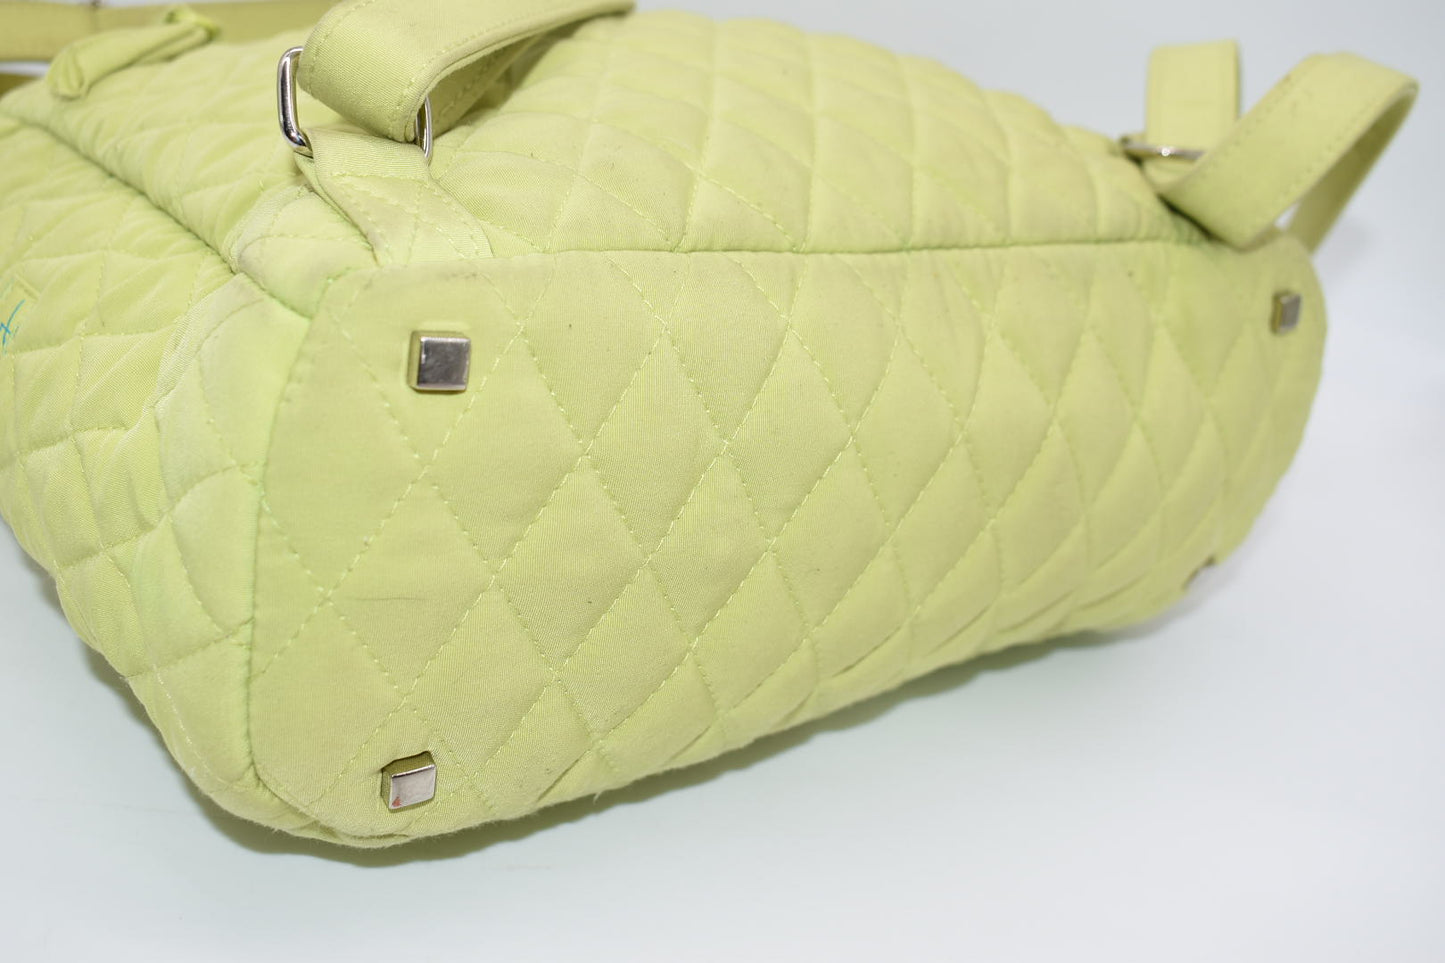 Vera Bradley Microfiber Backpack in "Key Lime" Pattern